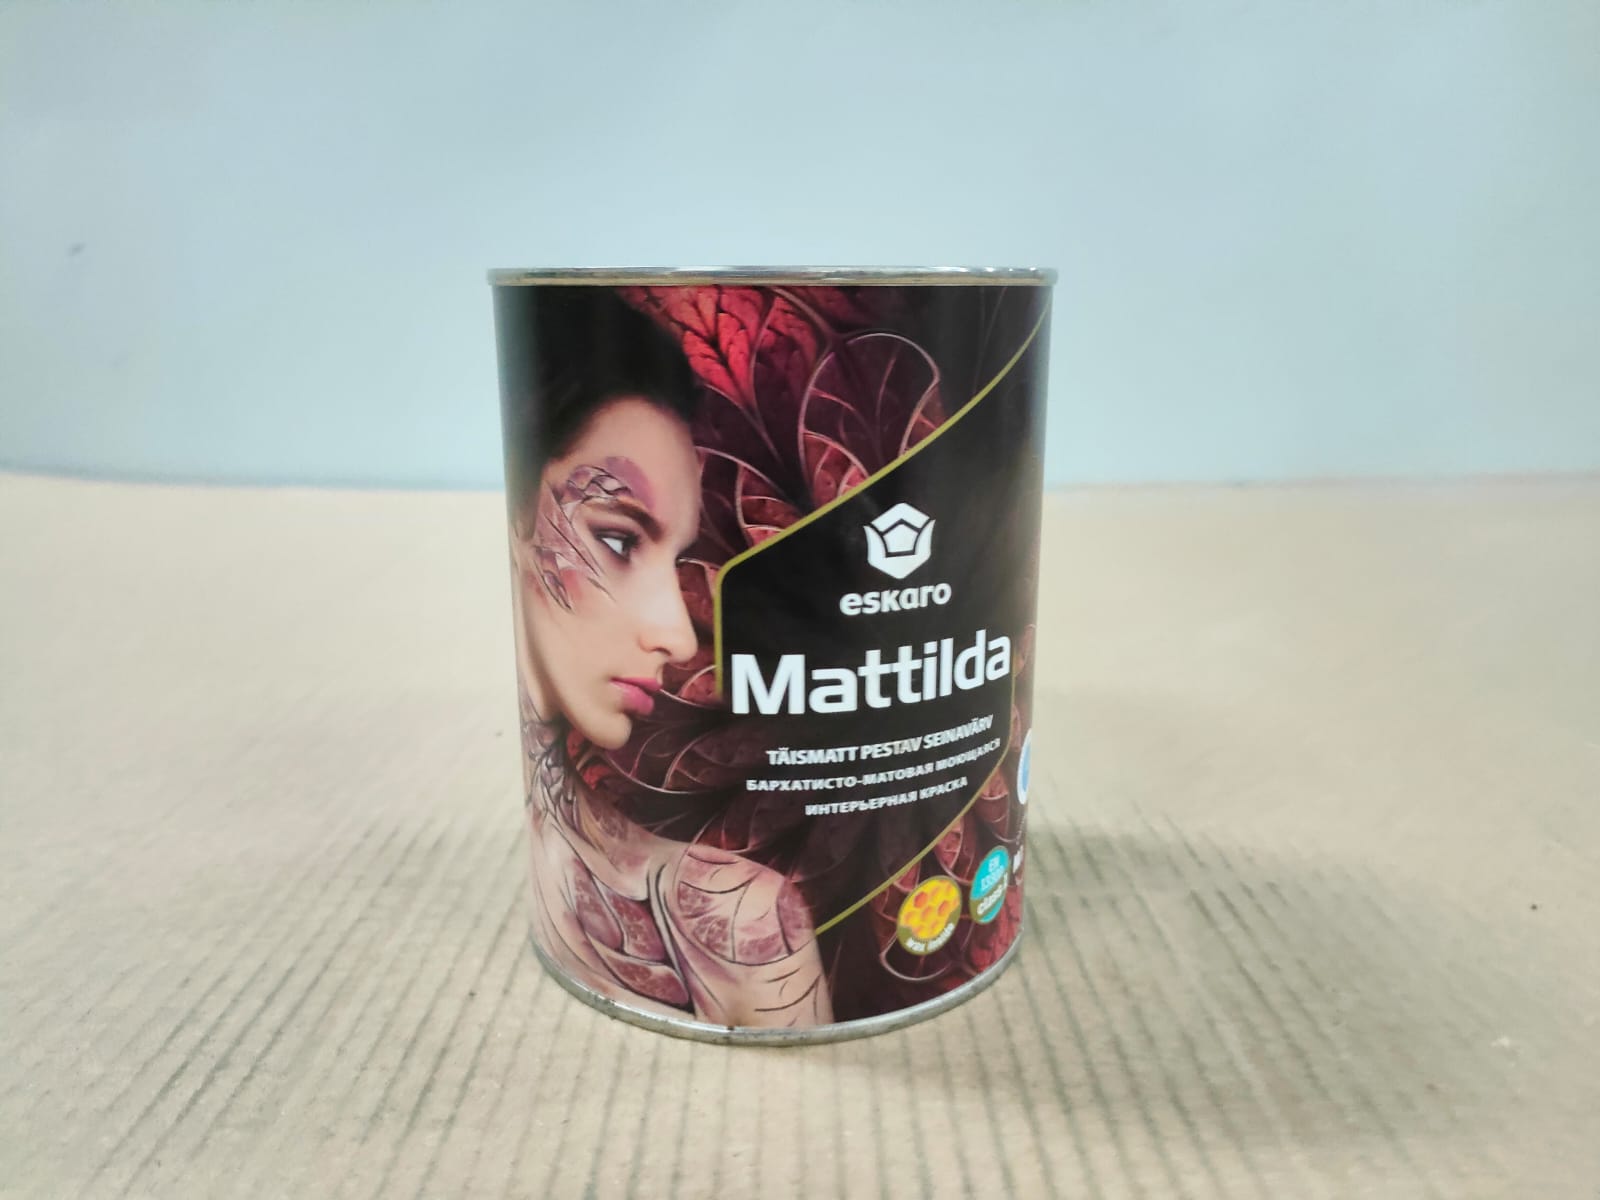 Бархатисто-матовая моющаяся интерьерная краска Eskaro Mattilda (База TR - прозрачная) 0.9 л